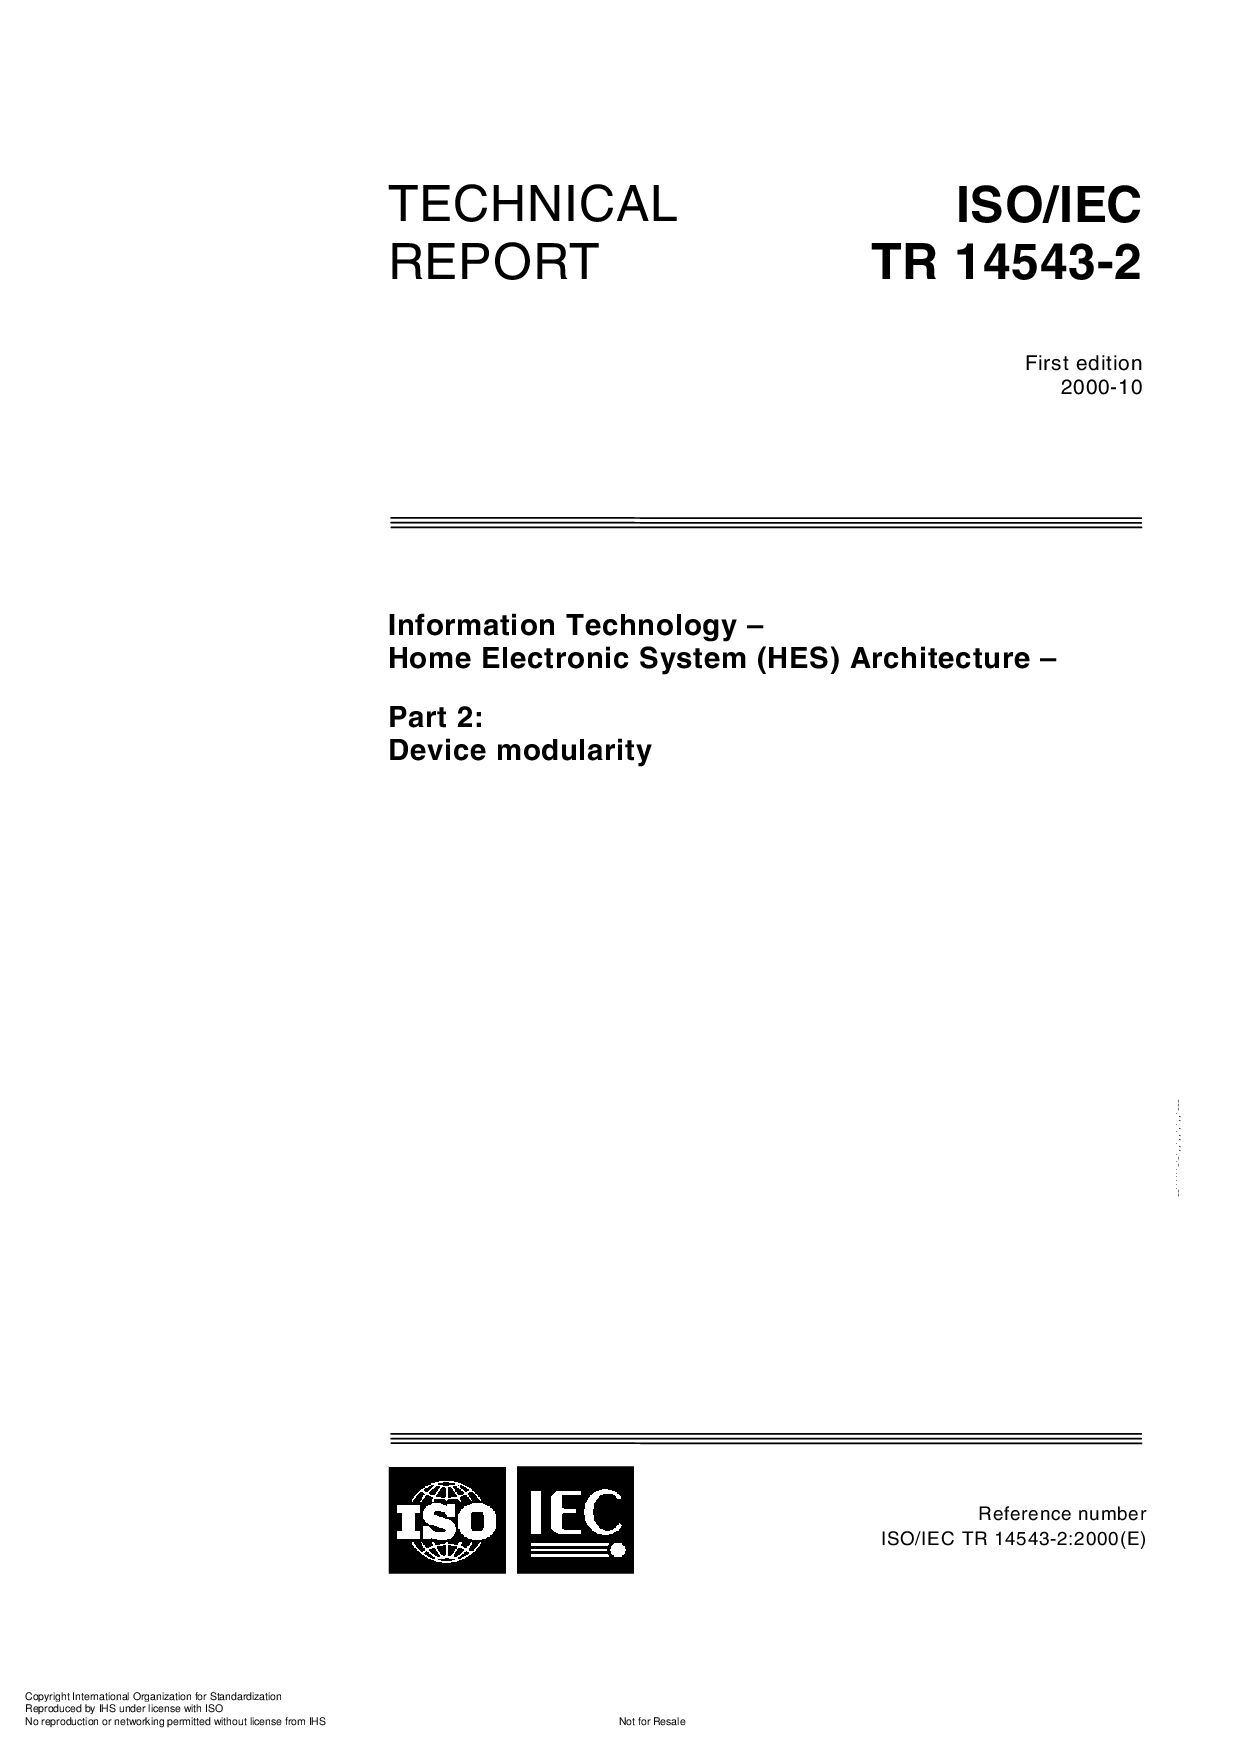 ISO/IEC TR 14543-2:2000封面图